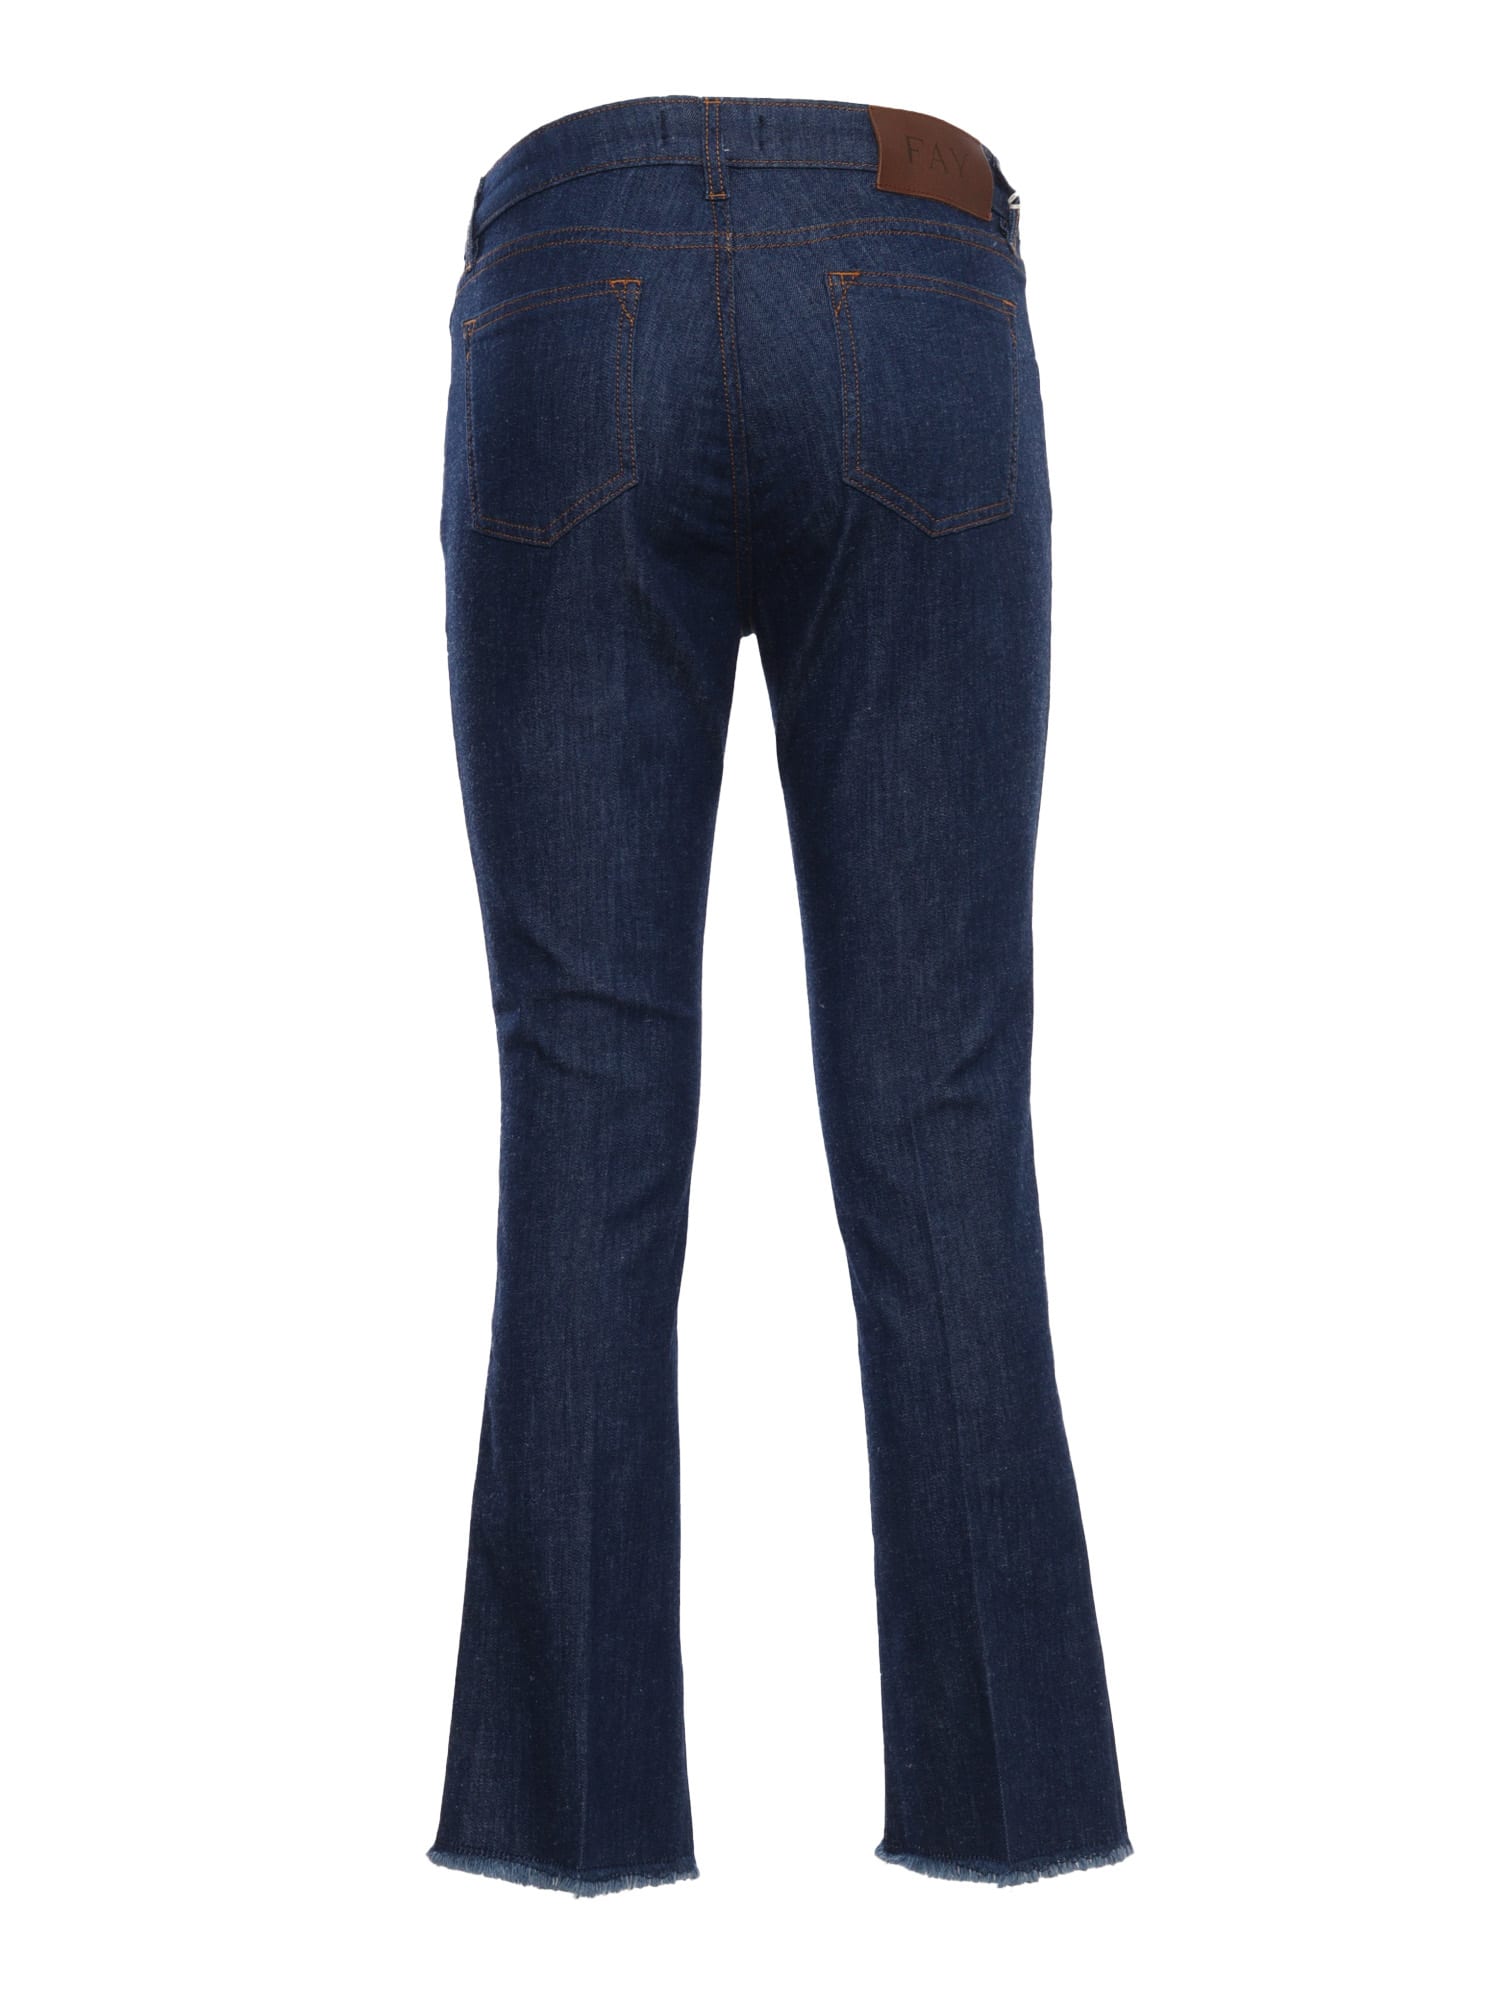 Shop Fay Blue Denim Jeans